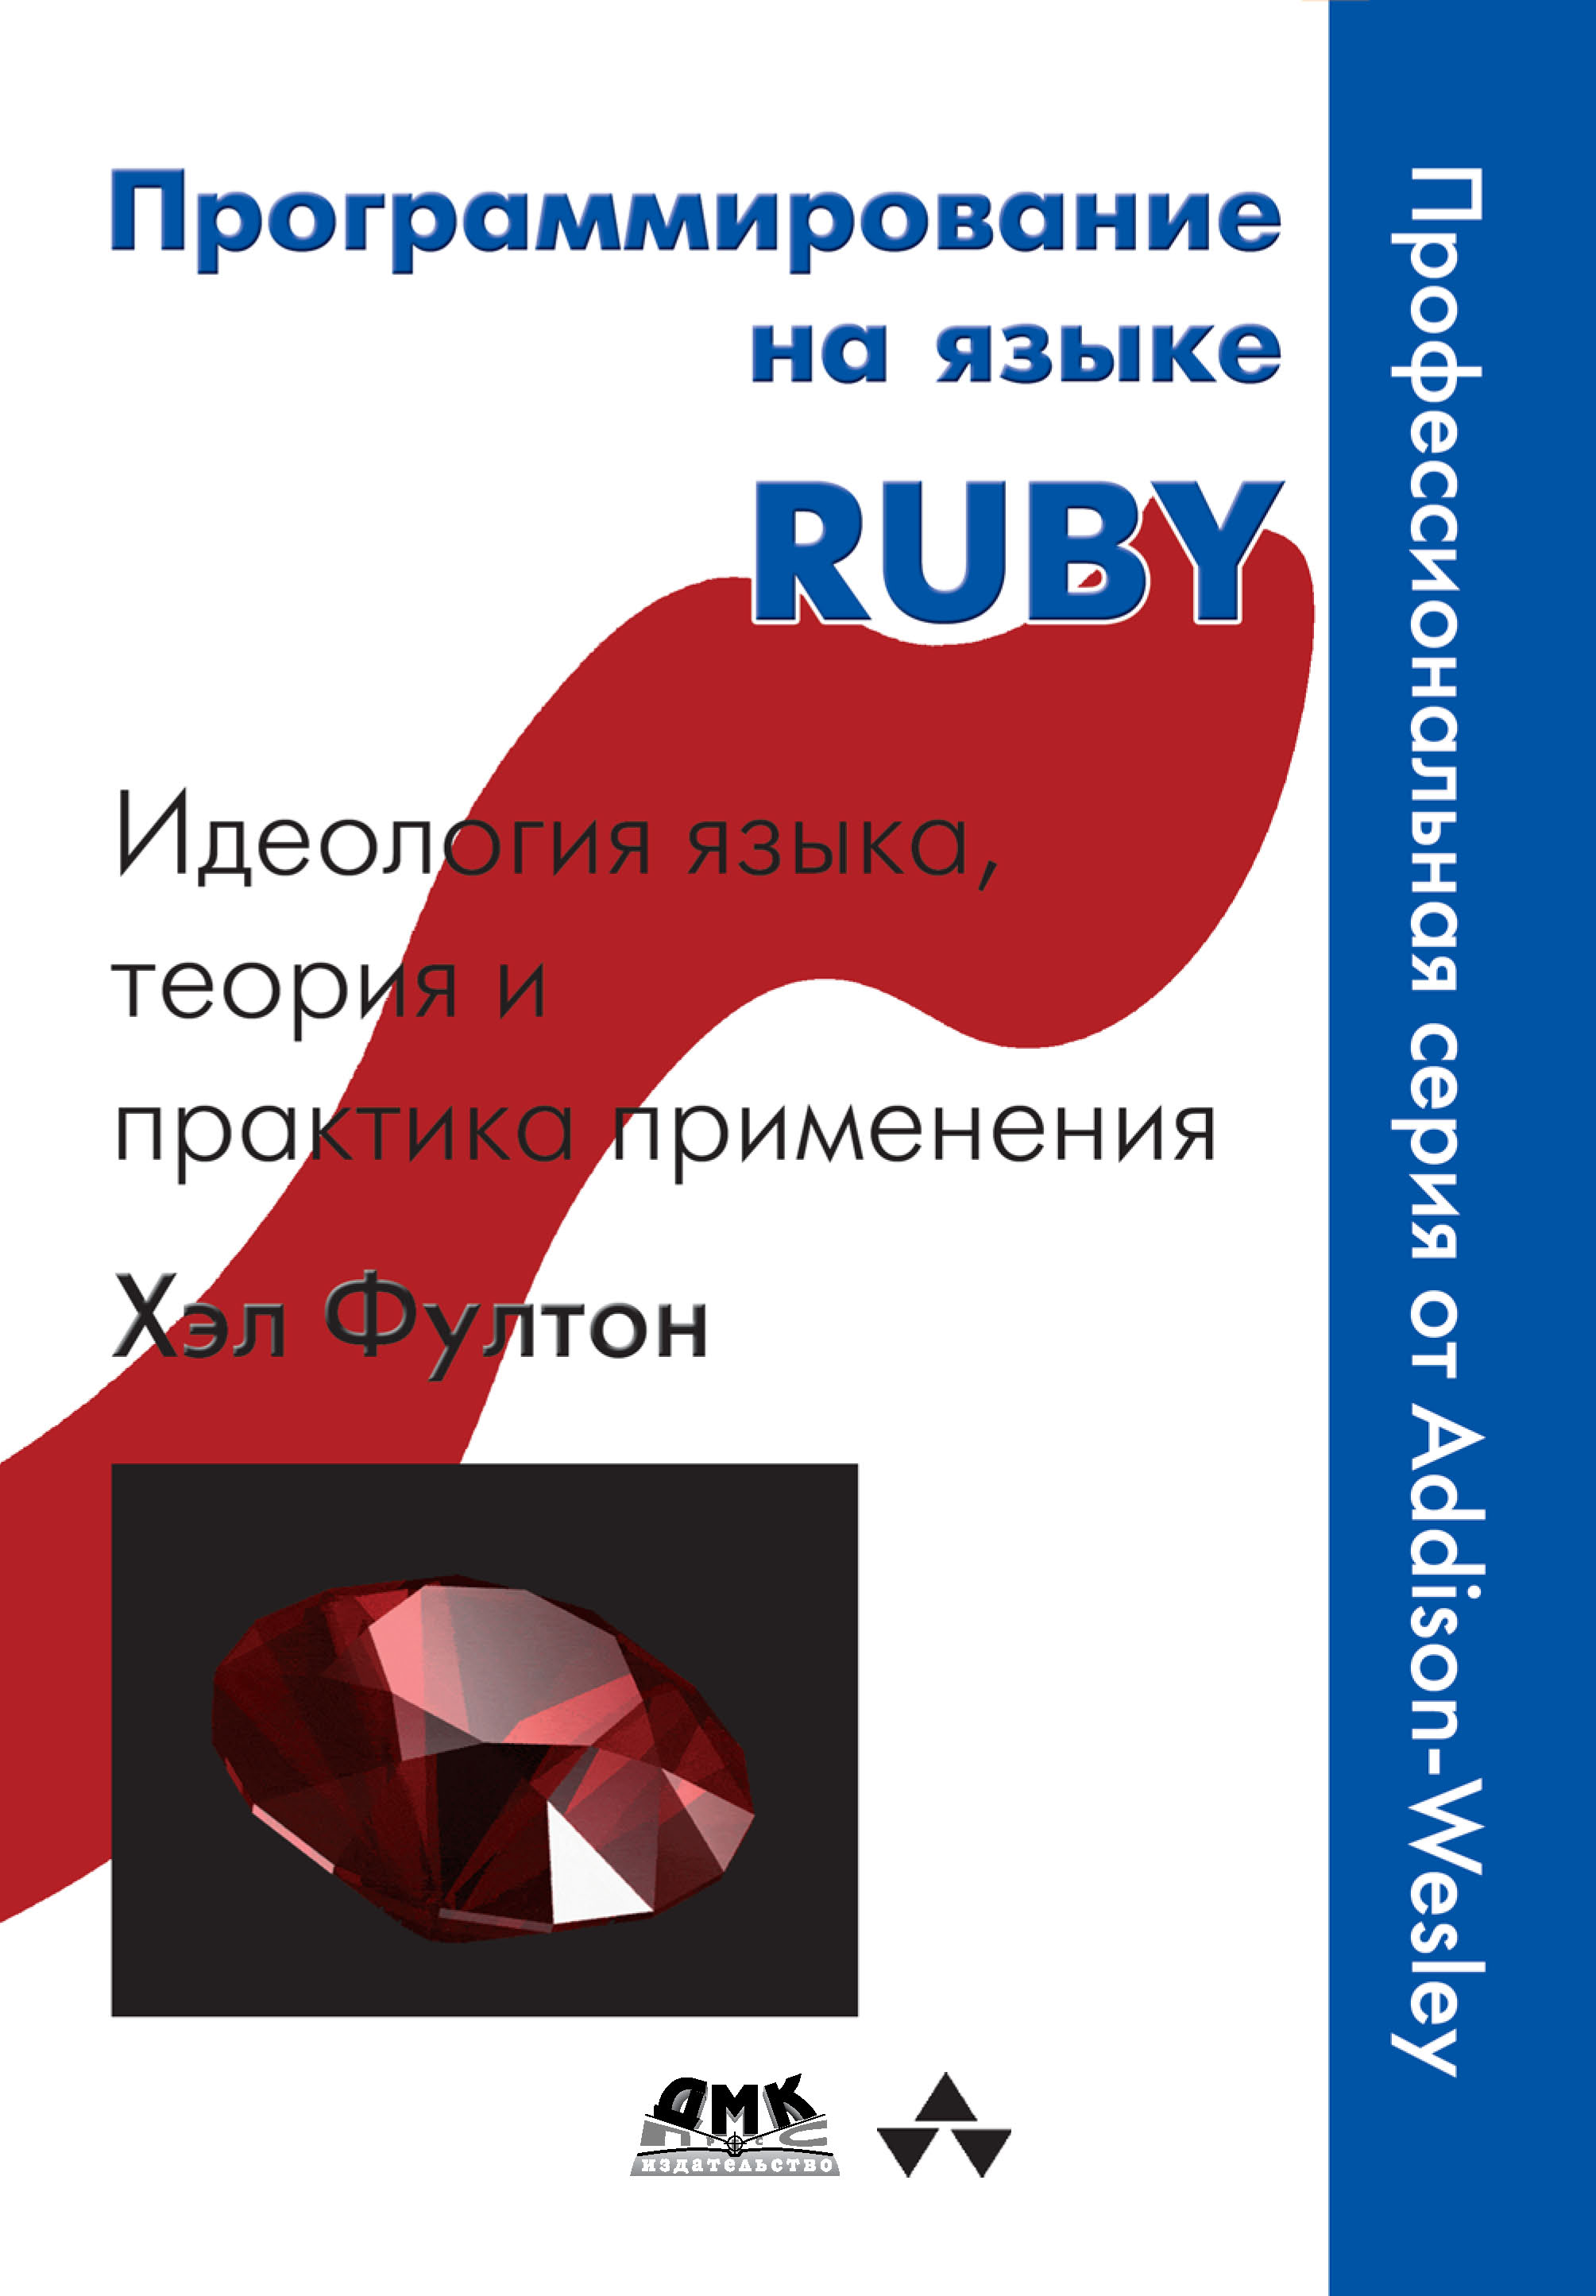 Книга  Программирование на языке Ruby созданная Хэл Фултон, А. А. Слинкин может относится к жанру зарубежная компьютерная литература, зарубежная образовательная литература, зарубежная справочная литература, интернет, программирование, руководства. Стоимость электронной книги Программирование на языке Ruby с идентификатором 6255107 составляет 399.00 руб.